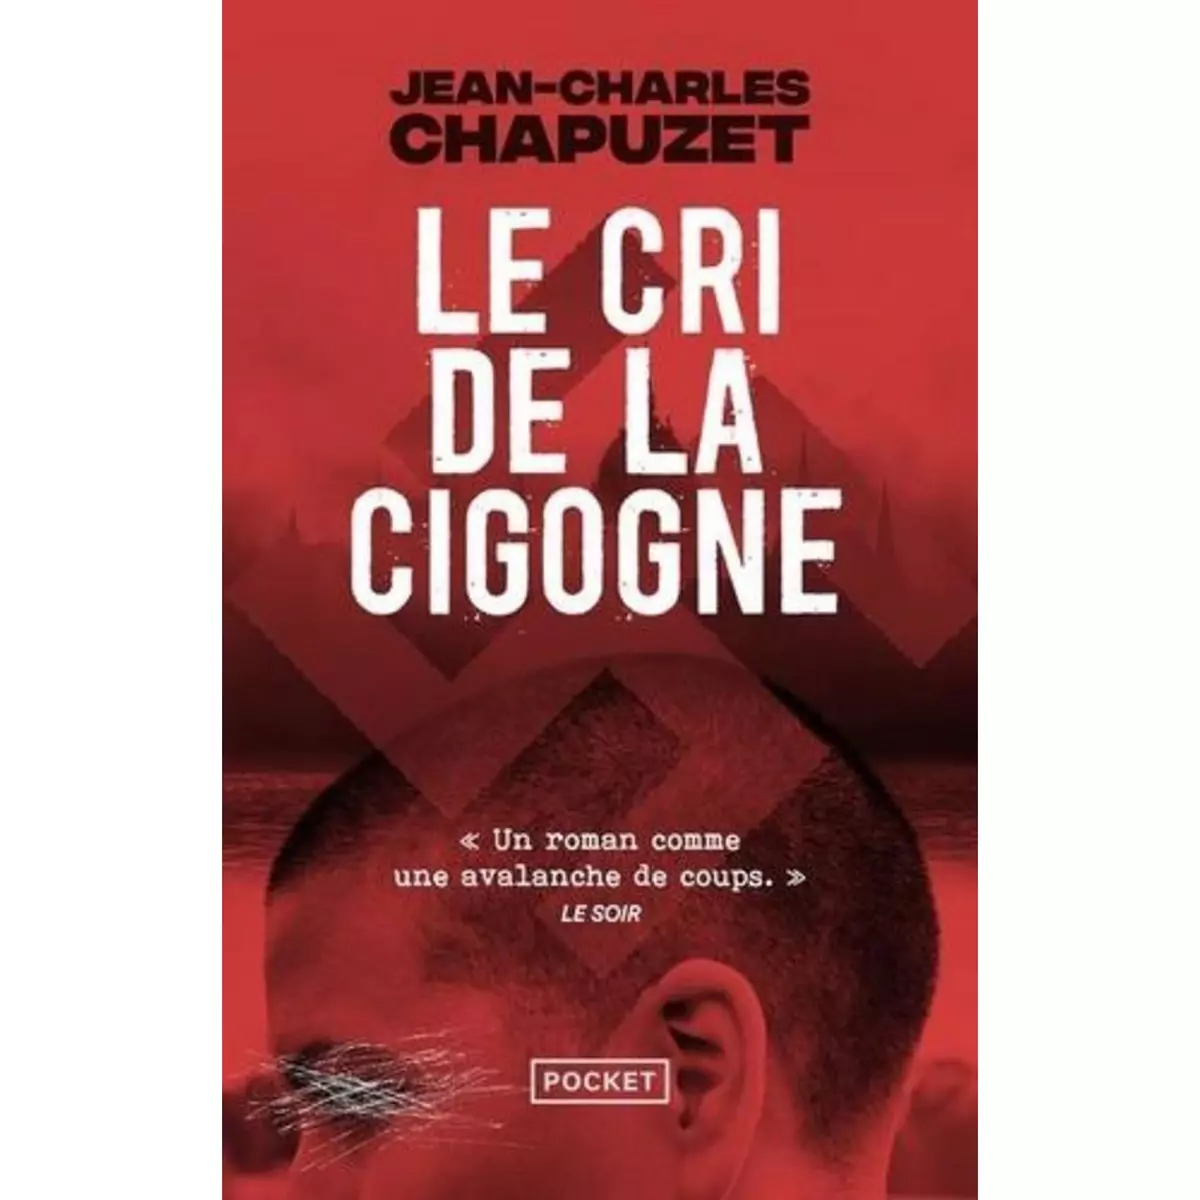  LE CRI DE LA CIGOGNE, Chapuzet Jean-Charles